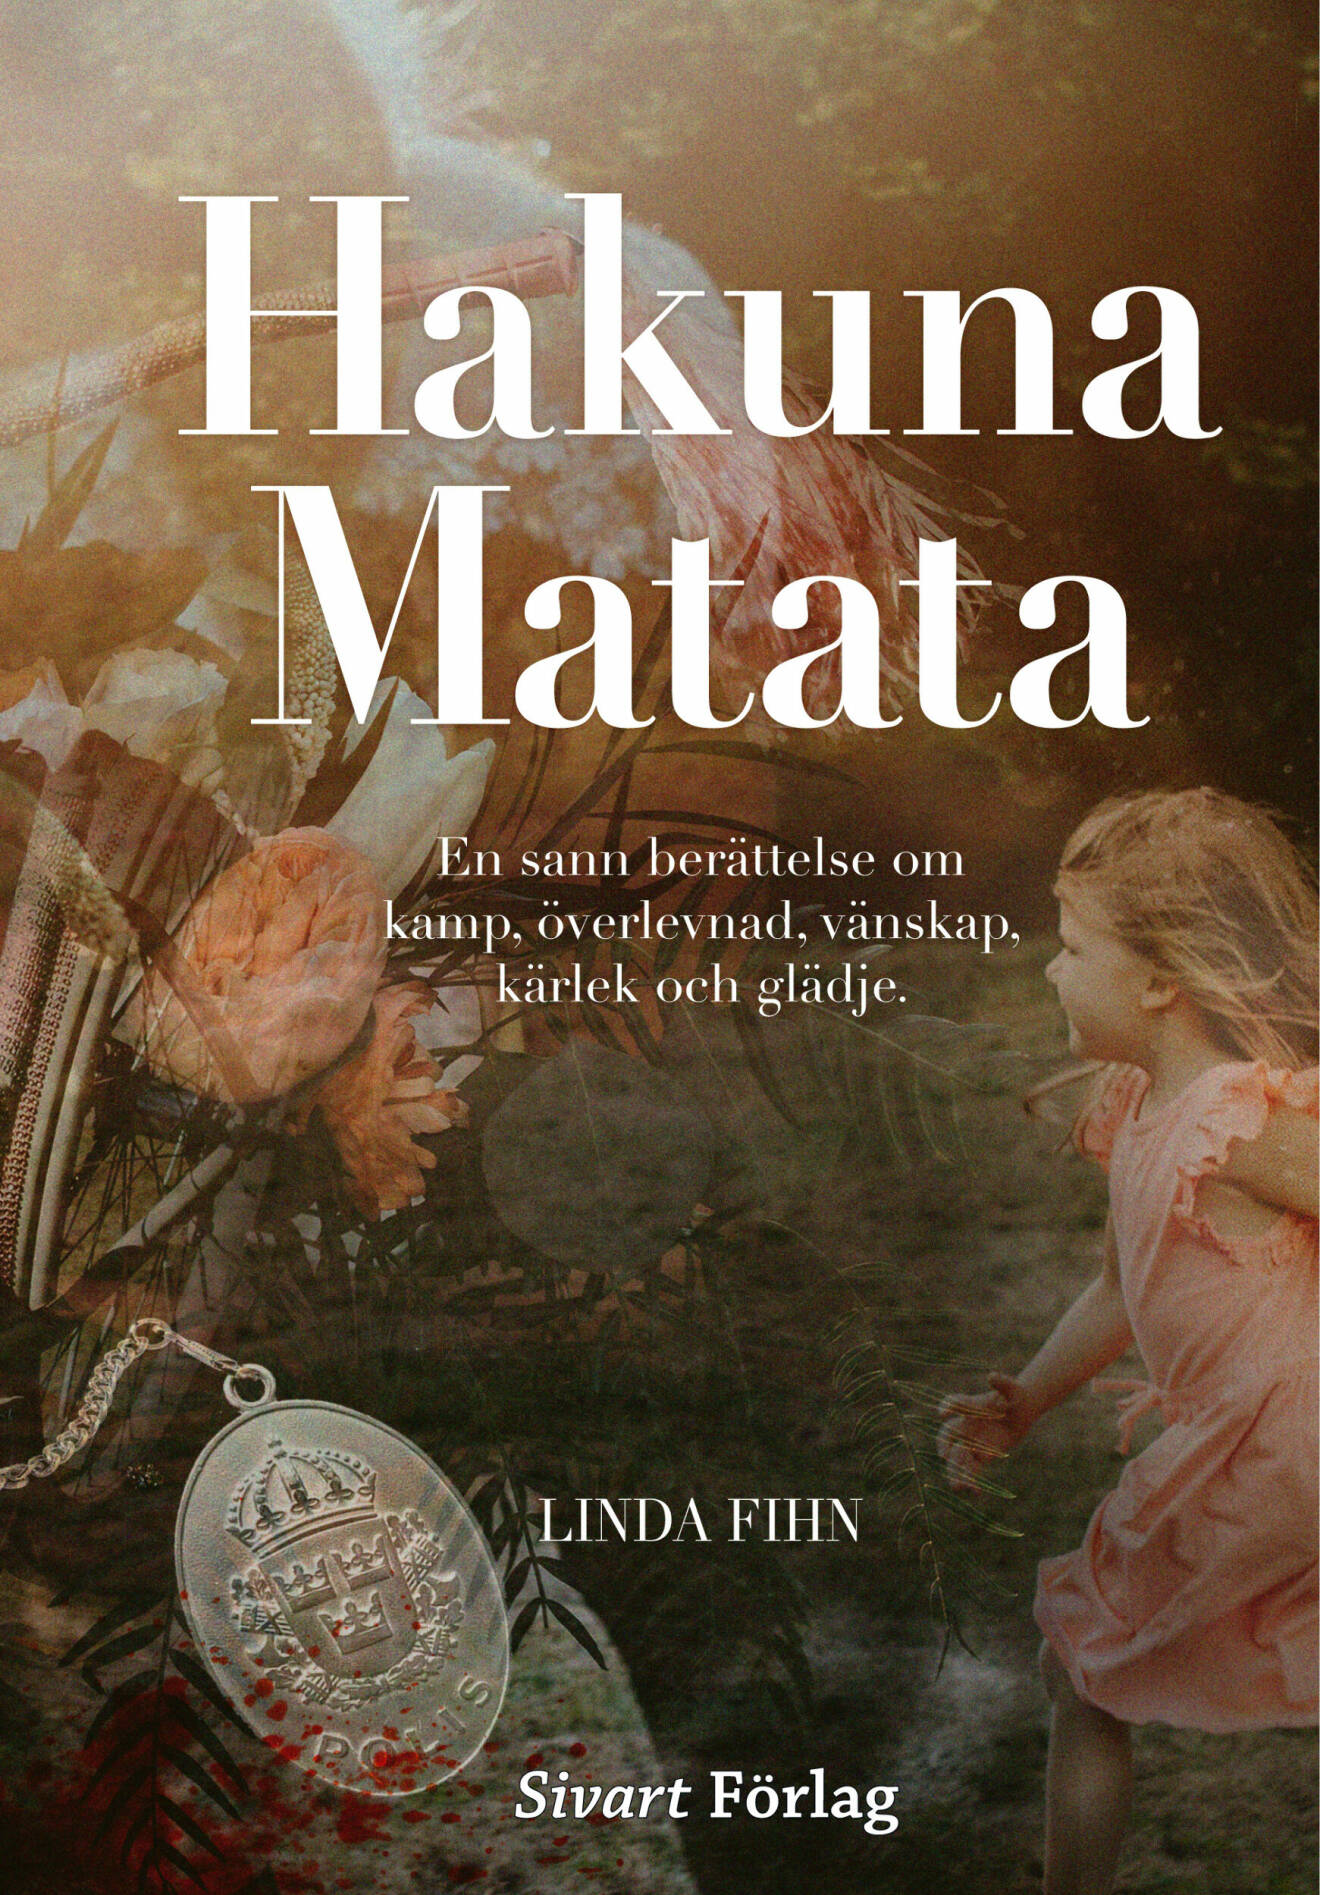 Bokomslag på Hakuna Matata av Linda Fihn.